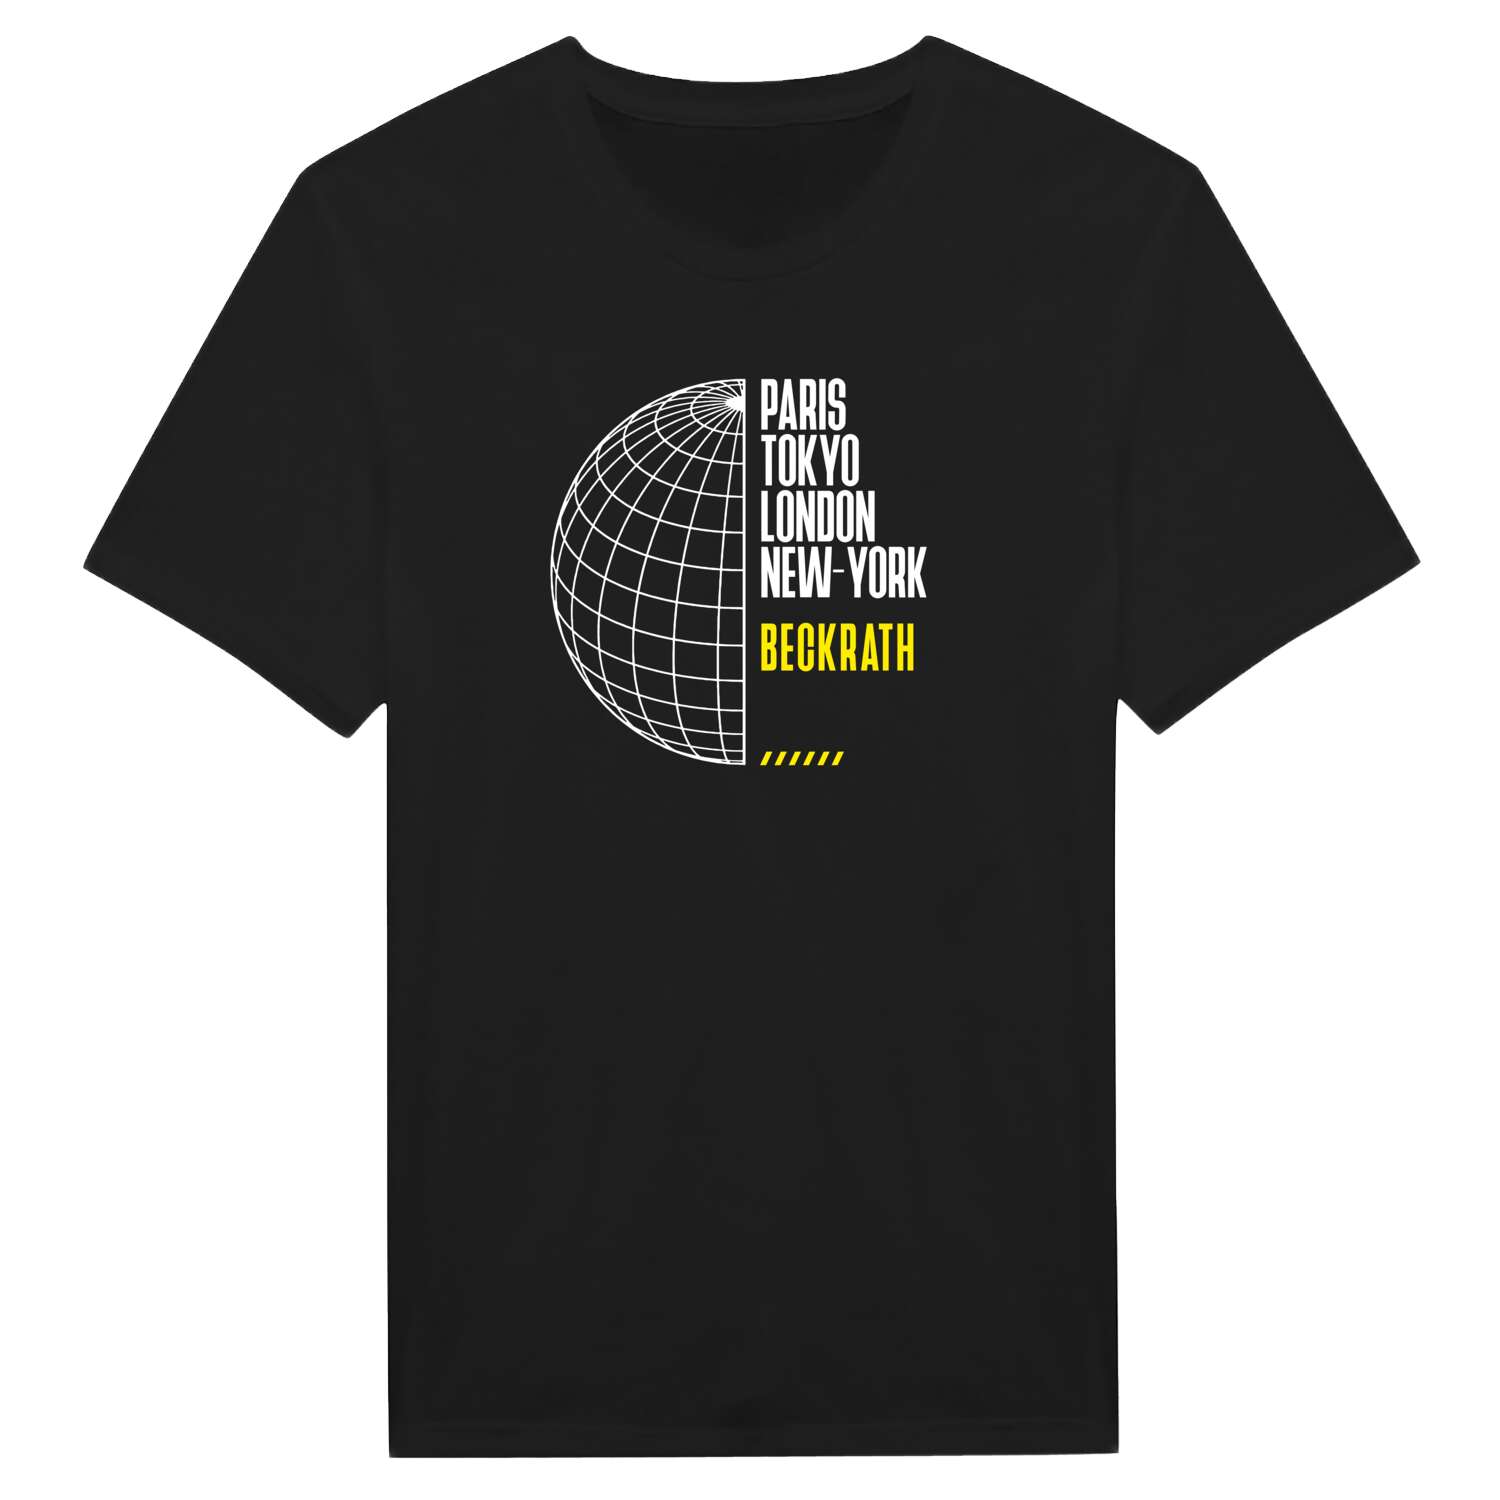 Beckrath T-Shirt »Paris Tokyo London«